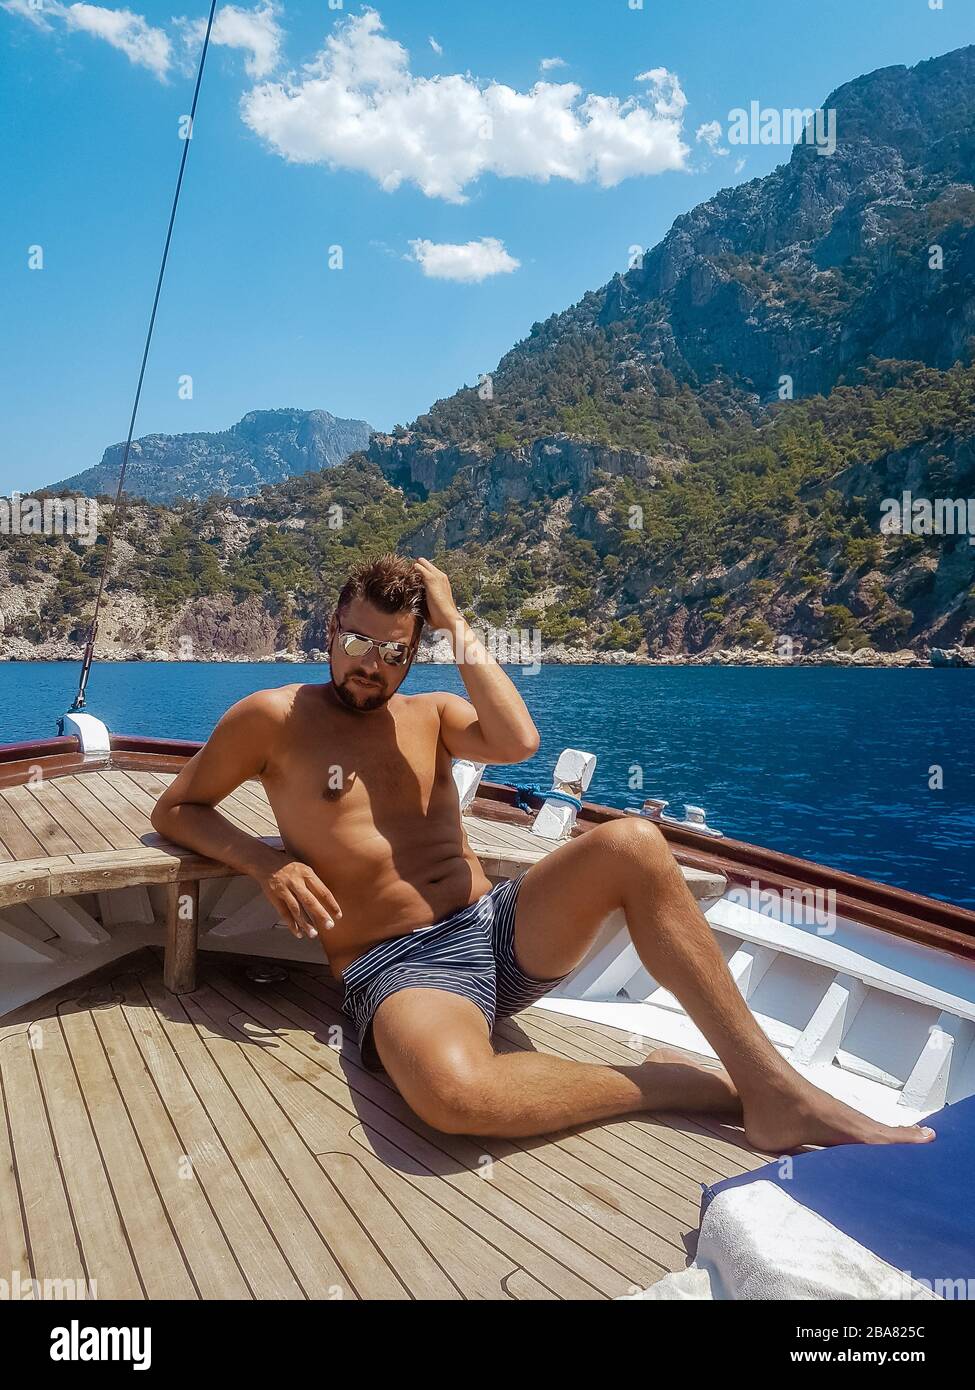 Jeune homme se reposant sur un bateau en bois pendant une excursion en bateau à la plage de papillons à Fethiye Turquie, bronzage jeune garçon en vêtements de natation Banque D'Images